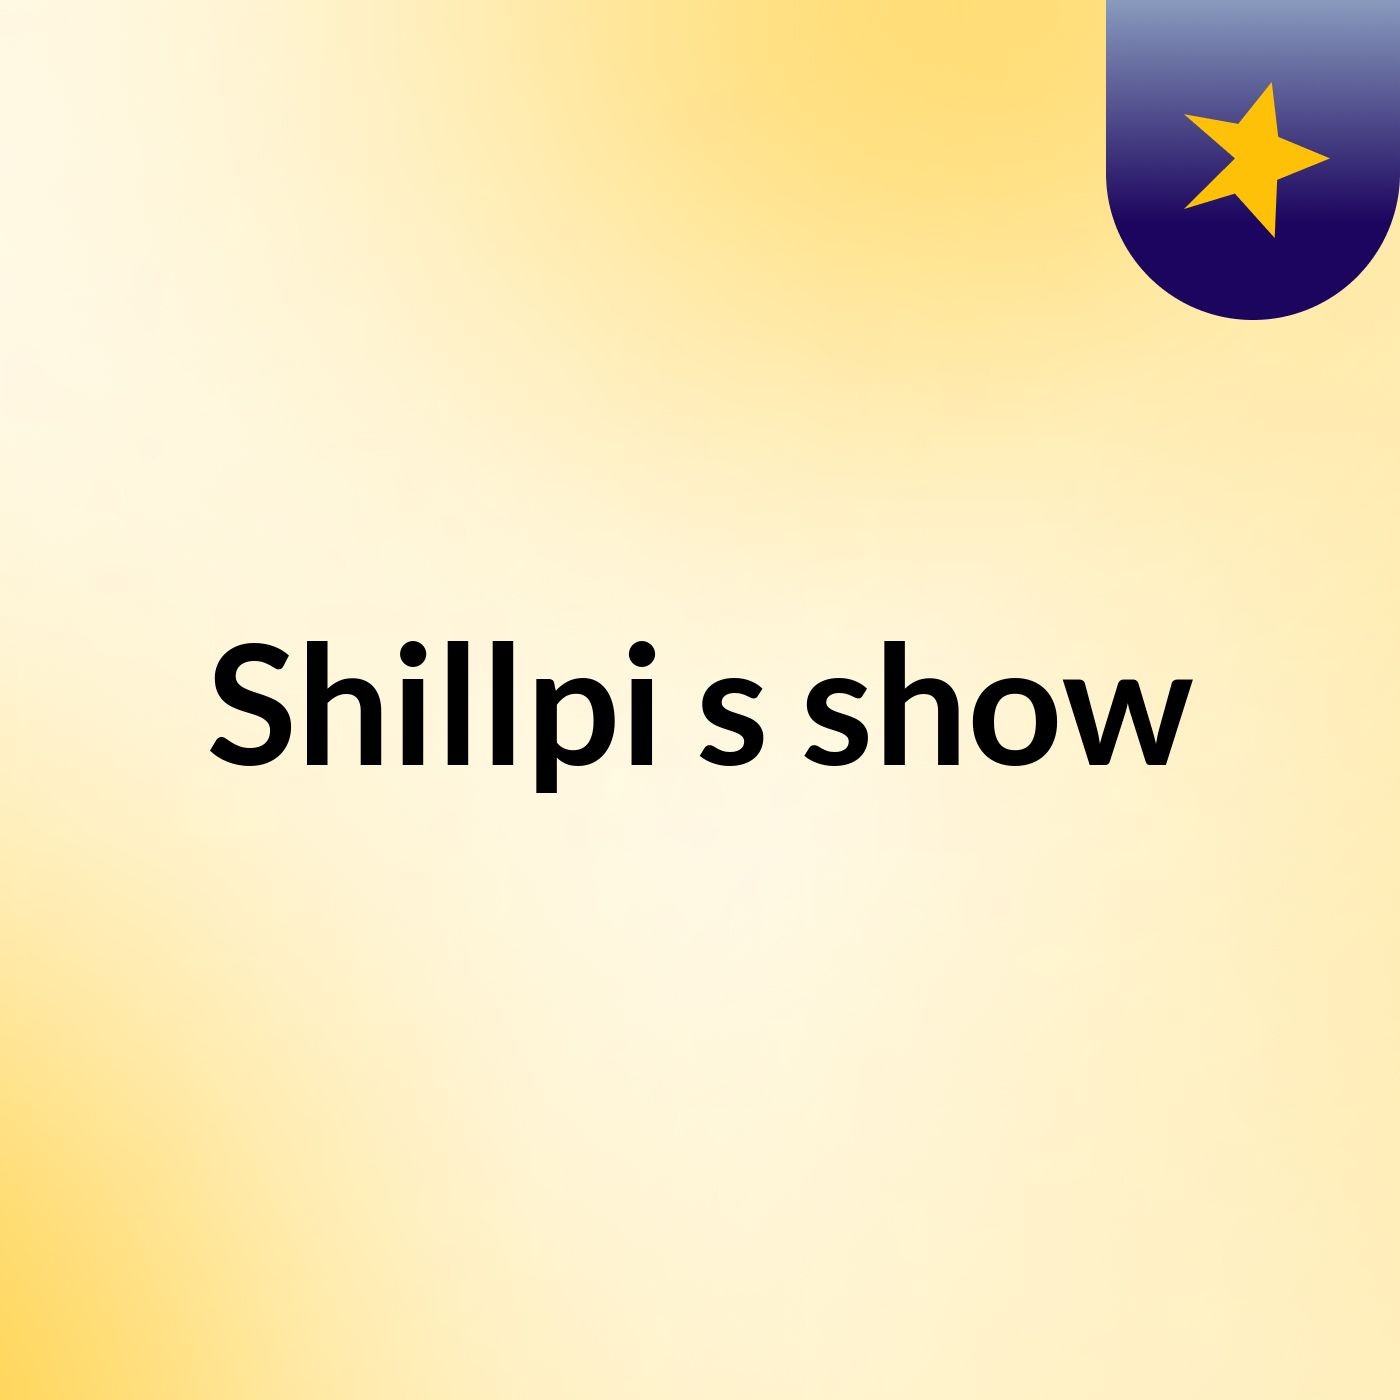 Shillpi's show